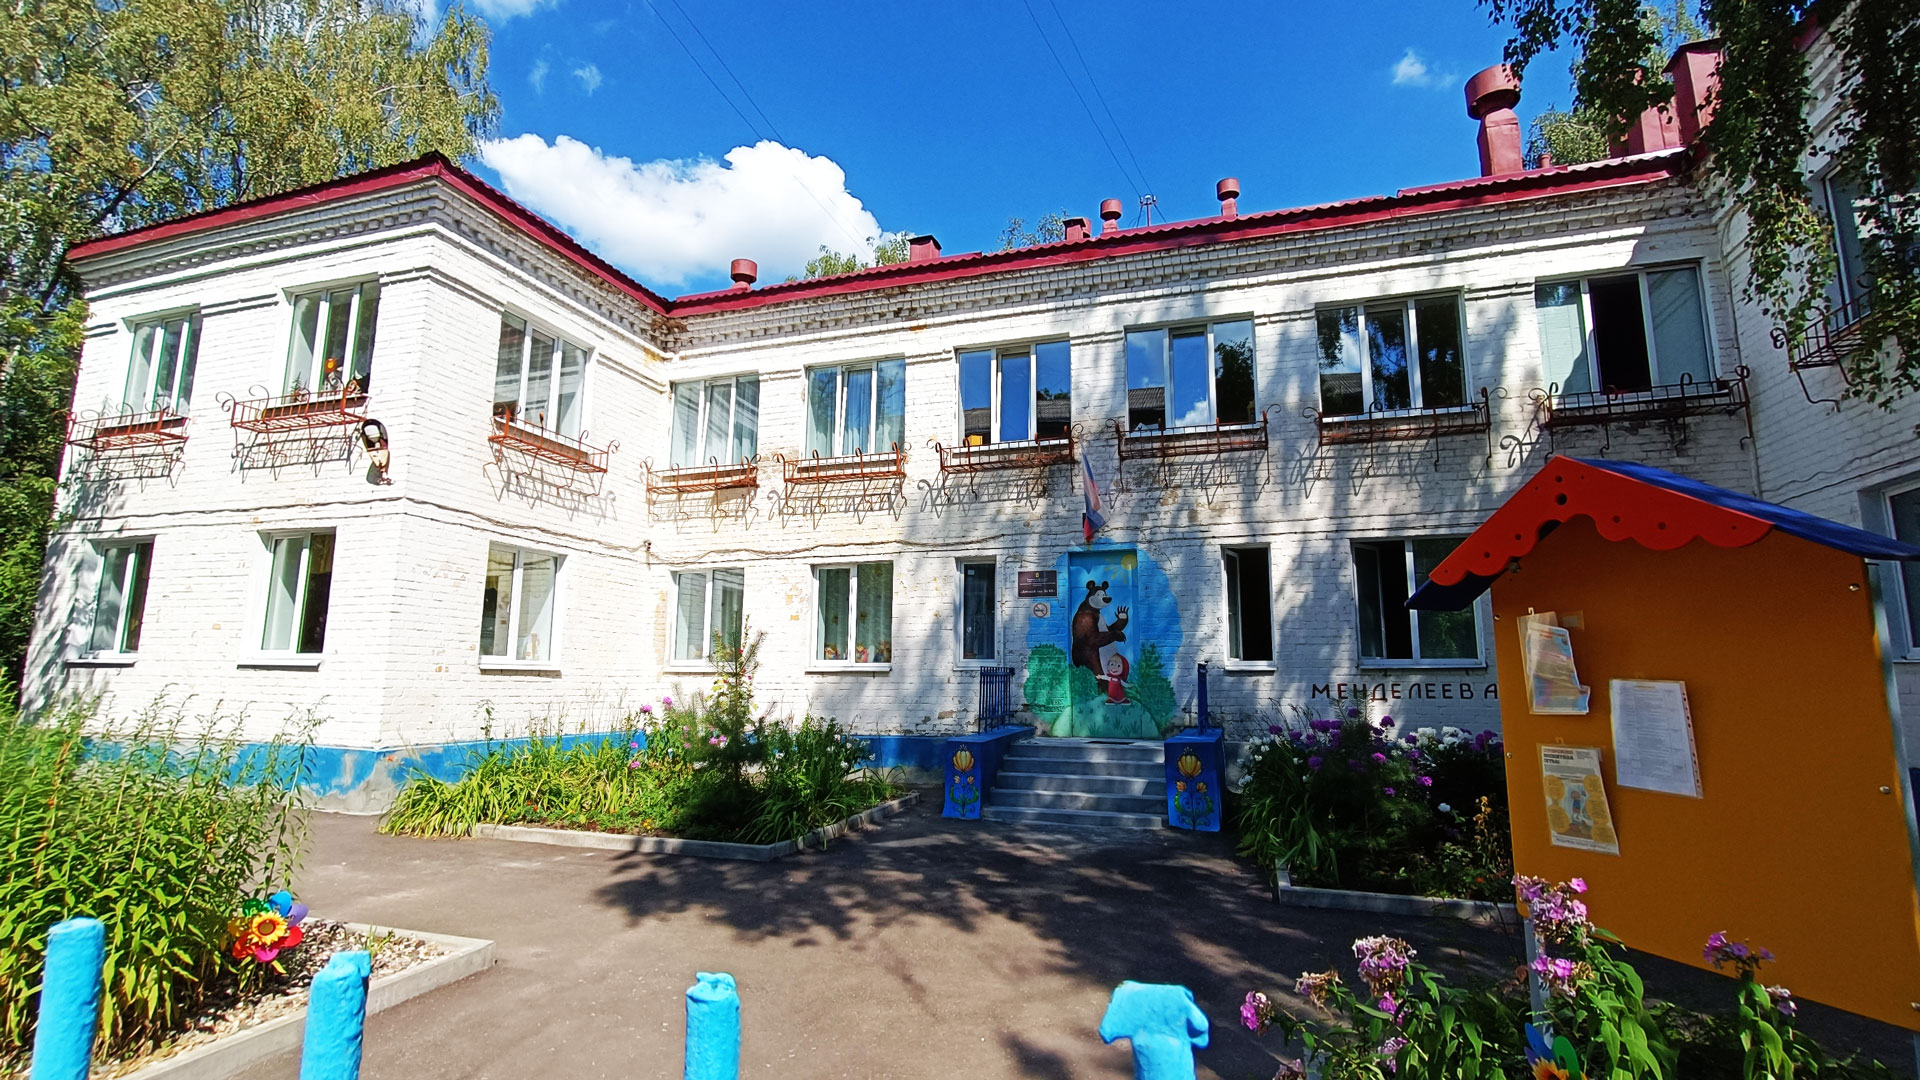 Детский сад 88 Ярославль: общий вид здания.